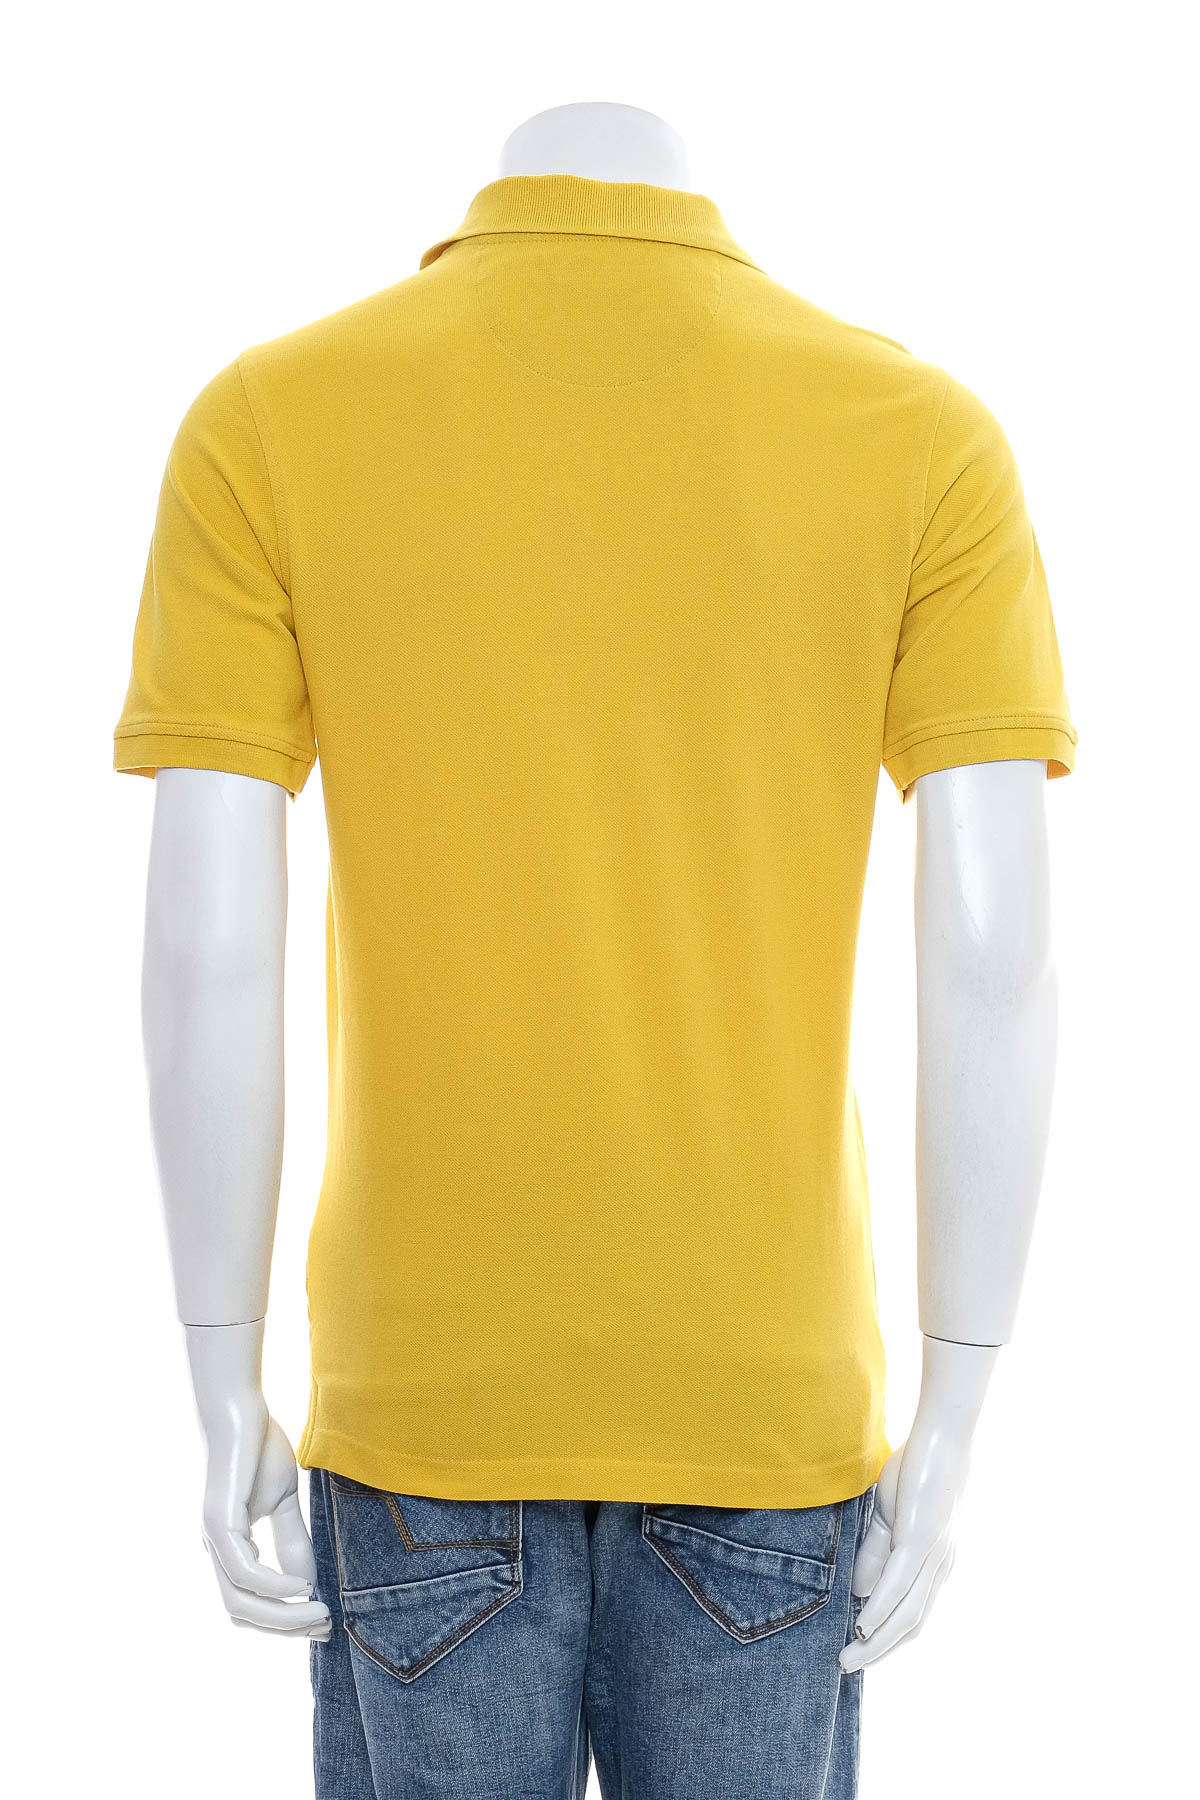 Men's T-shirt - Redmond - 1